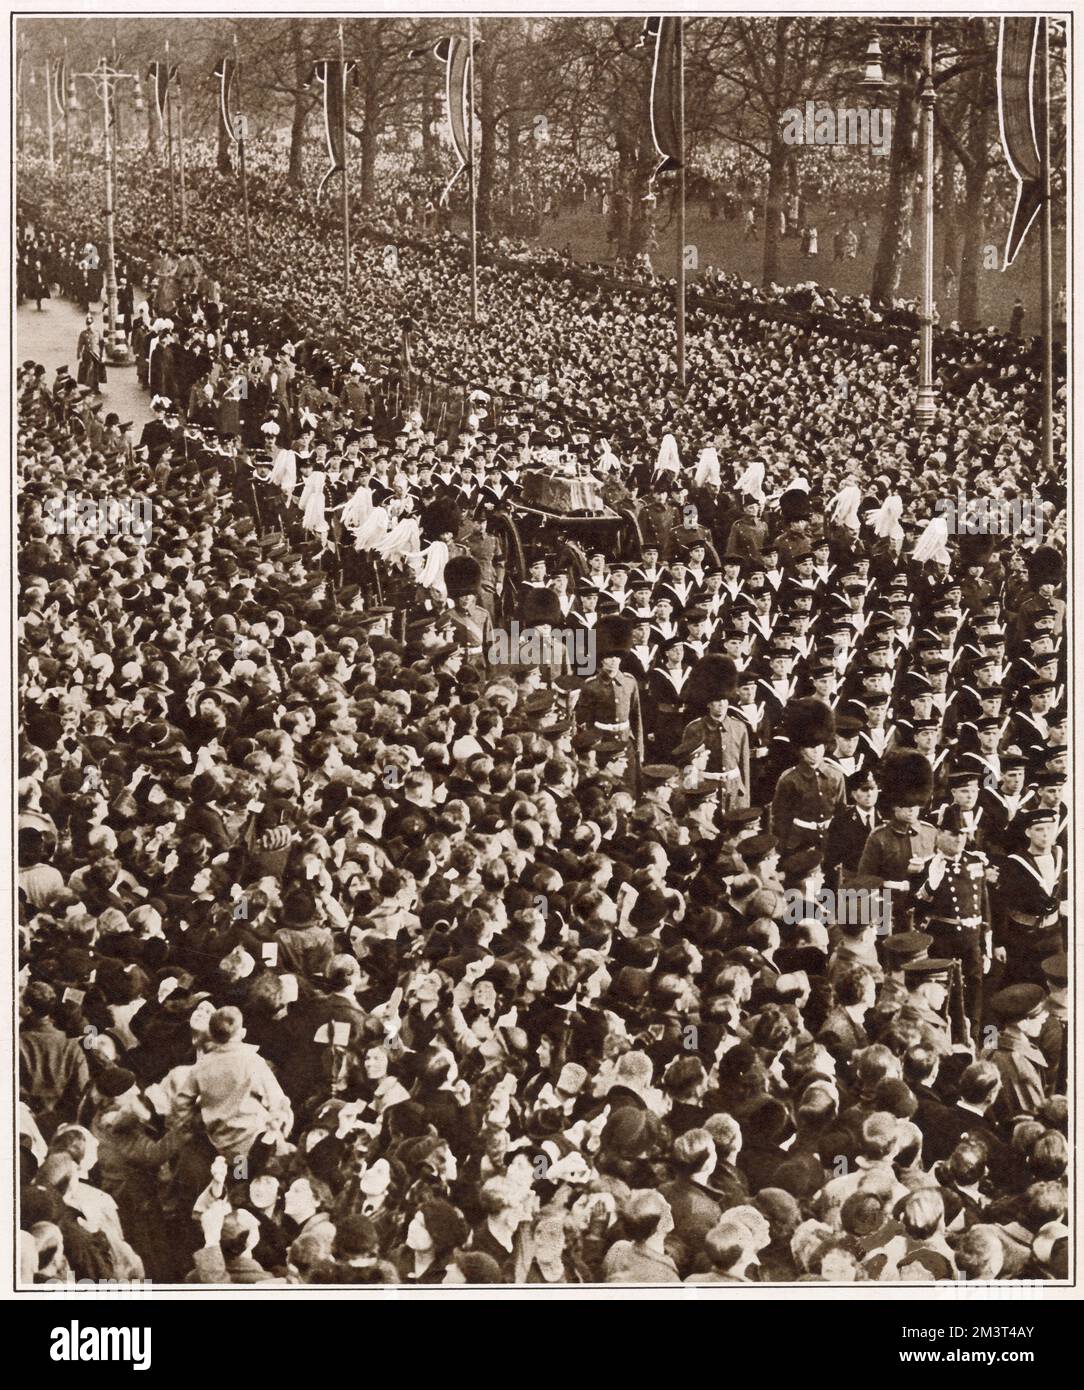 Des foules immenses bordent le chemin de la procession funéraire du roi George V à Londres, avec toute personne incapable de voir correctement quand le chariot porte-arme portant le corps du roi passe. Un certain nombre de participants à l'arrière vu à l'aide de miroirs et de periscopes à voir à la place. Banque D'Images